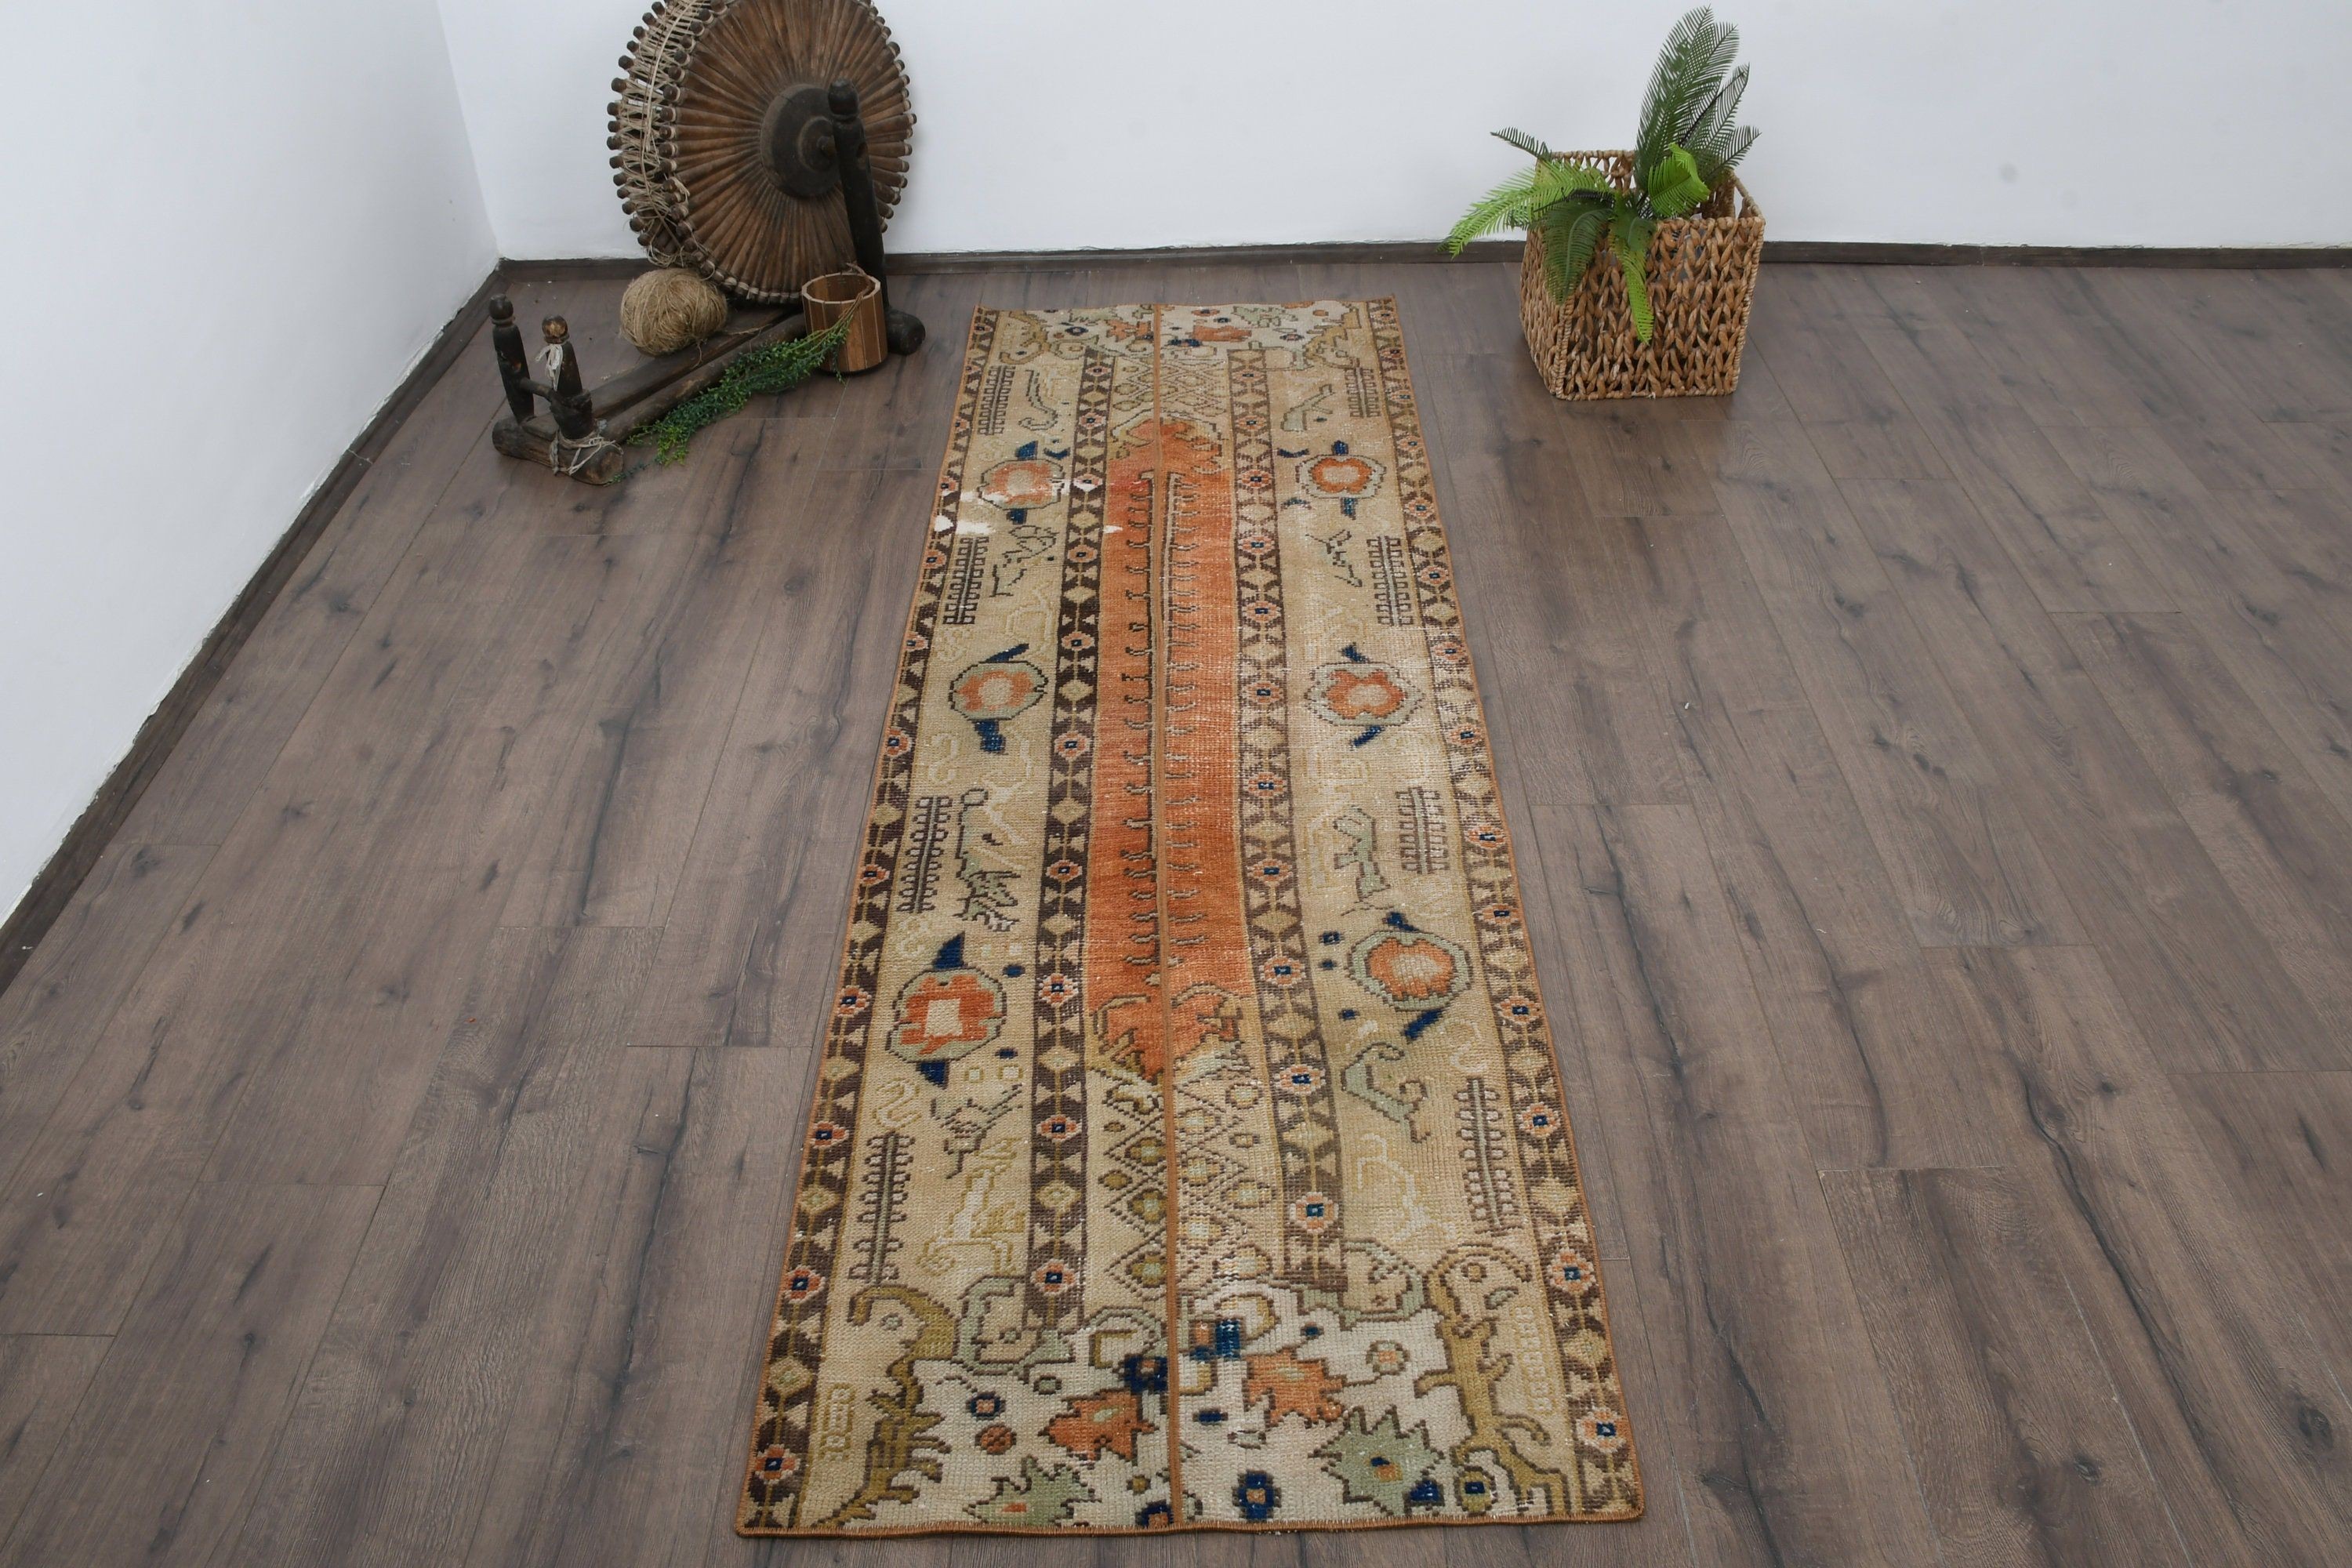 Turkish Rugs, Rugs for Runner, Anatolian Rug, Brown Floor Rugs, Kitchen Rugs, Hallway Rugs, Floor Rugs, Vintage Rug, 2.4x7.5 ft Runner Rug